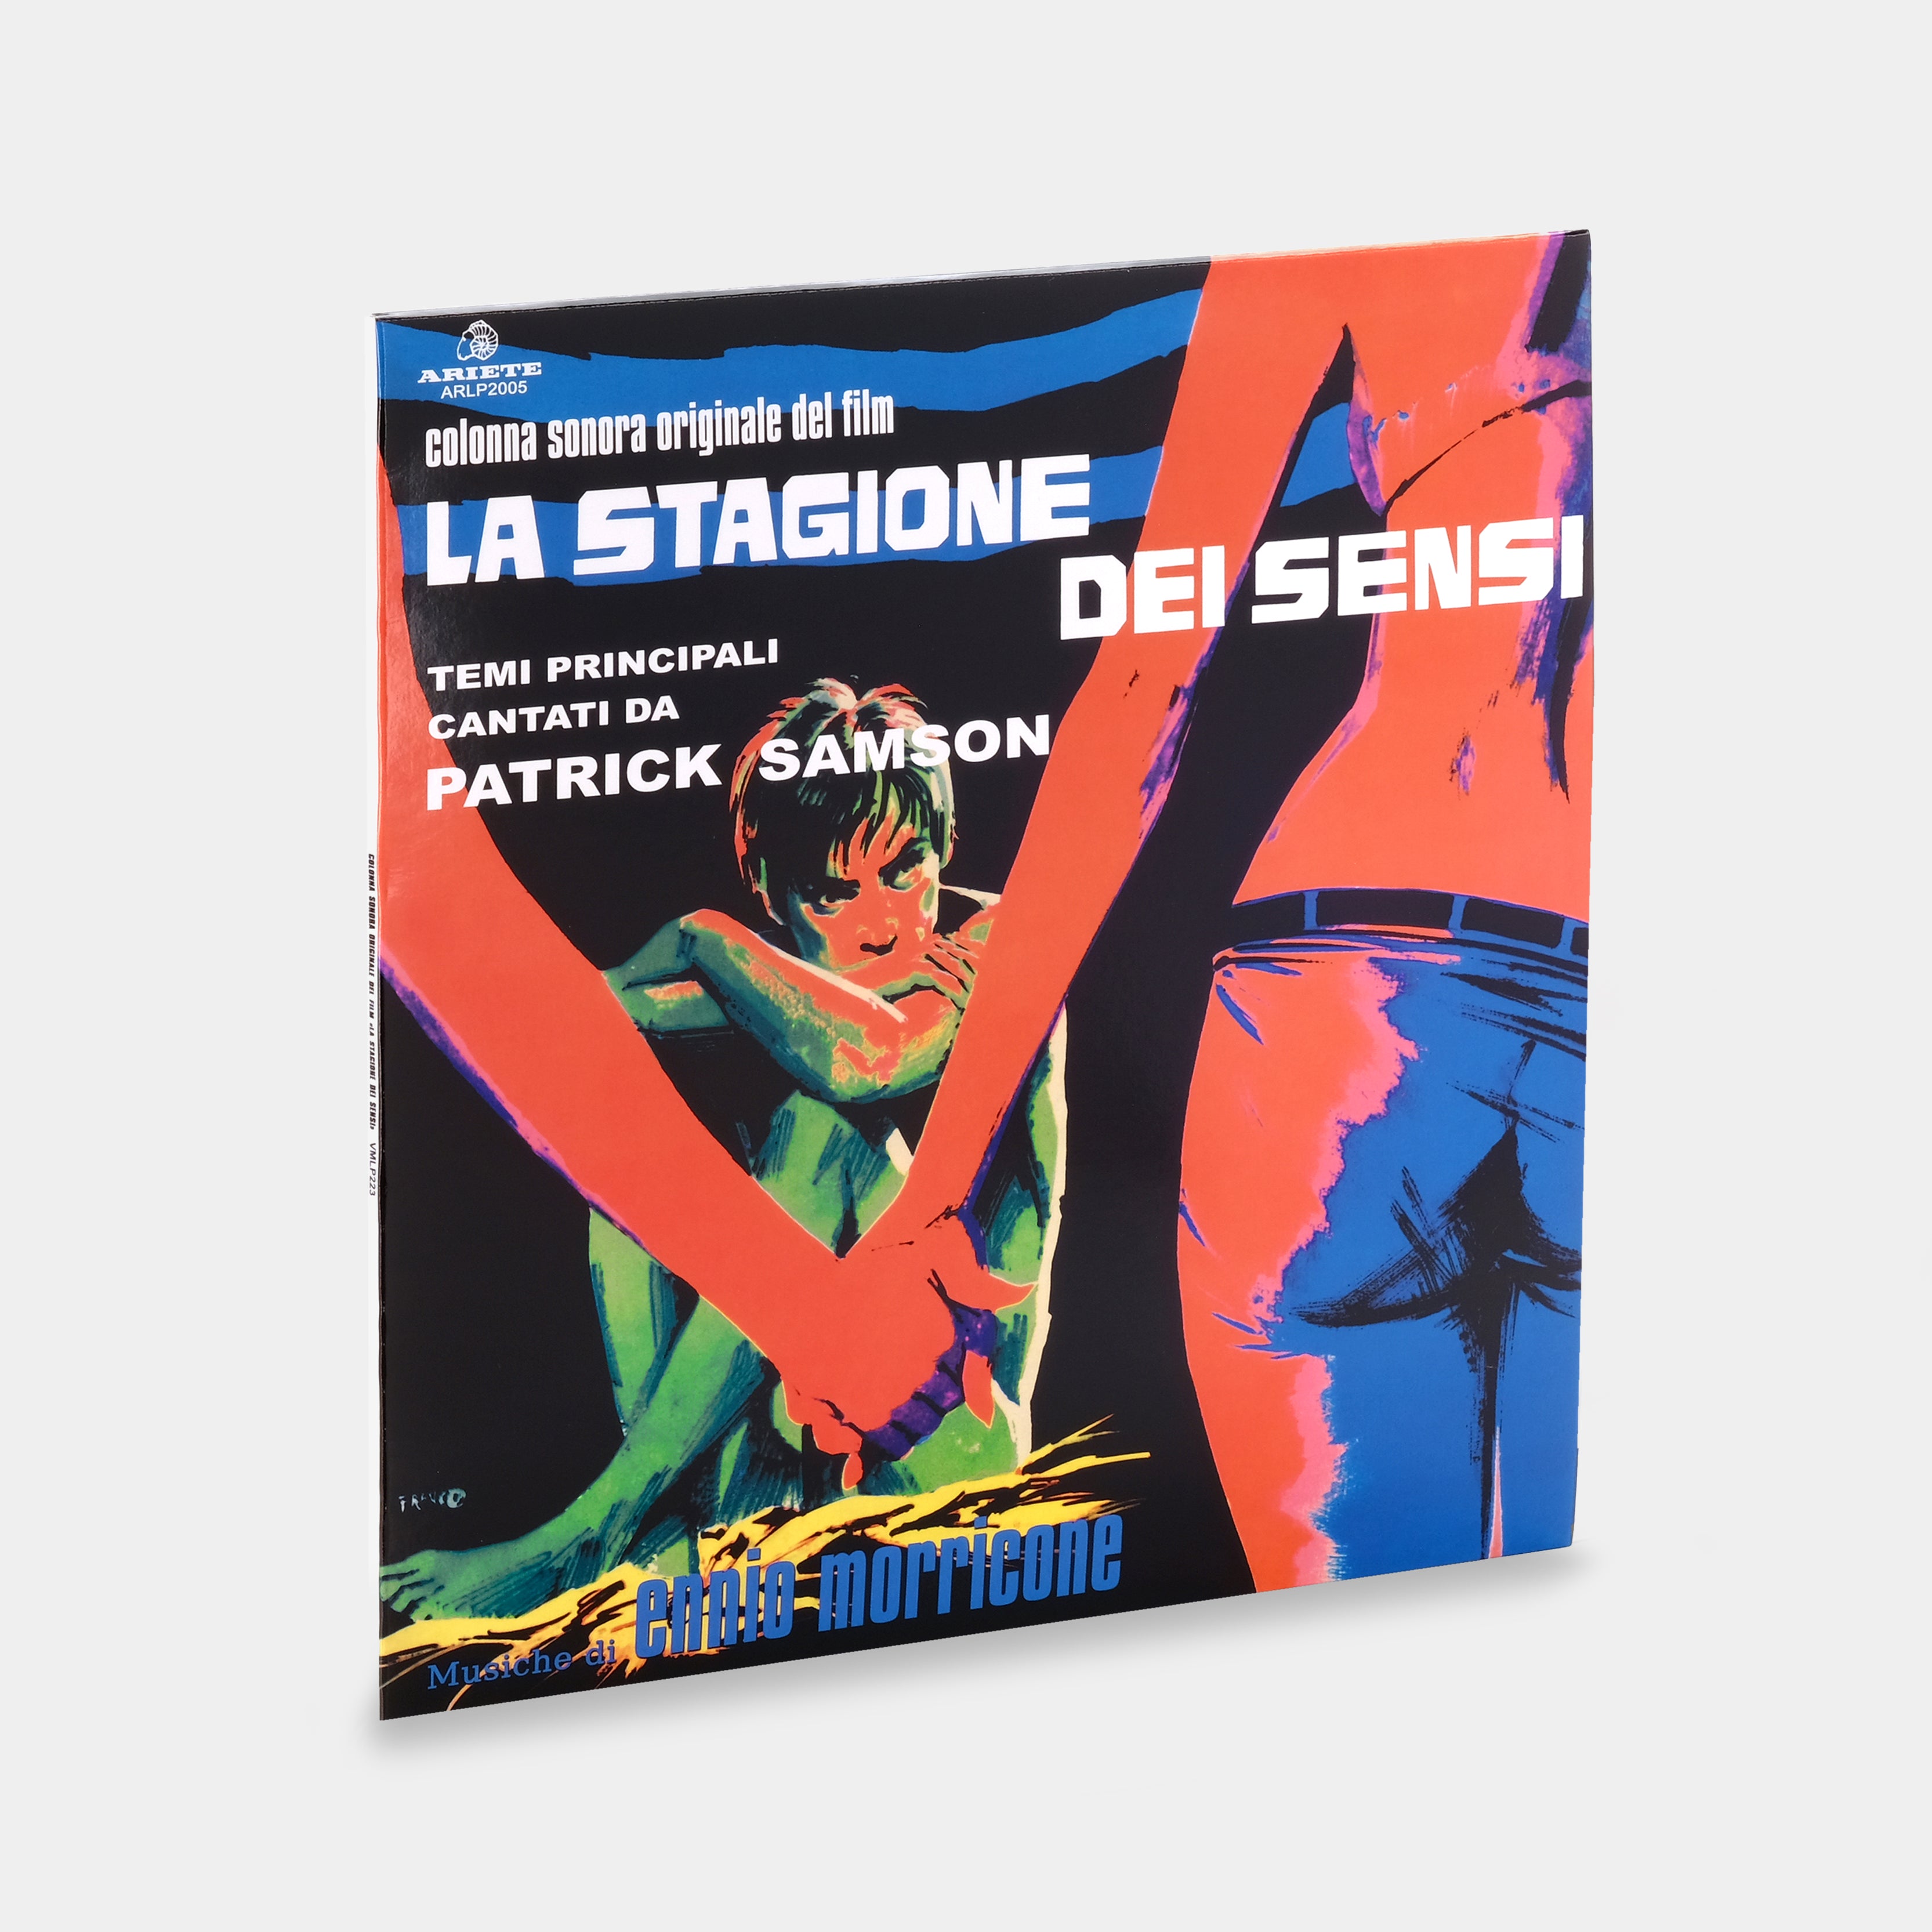 Ennio Morricone - La Stagione Dei Sensi (Colonna Sonora Originale Del Film) LP Clear Vinyl Record